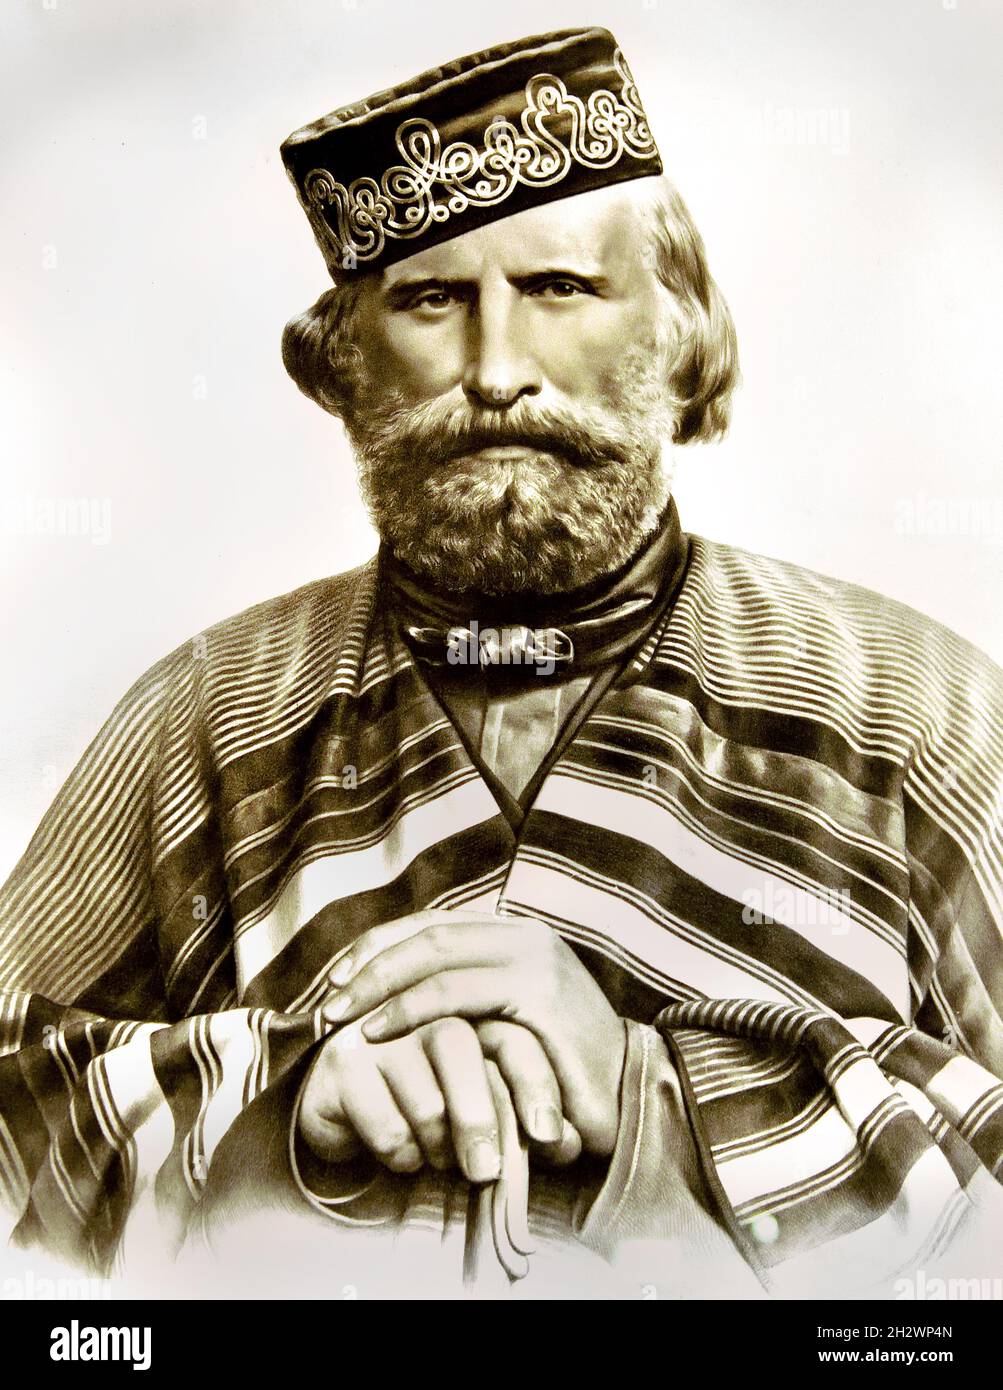 Giuseppe Garibaldi, gefeiert als einer der größten Generäle der Neuzeit Held der zwei Welten kommandierte und kämpfte in vielen militärischen Kampagnen. Garibaldi ( Giuseppe Maria Garibaldi 1807 – 1882 ) Italienisch, allgemein, patriotin, revolutionär, republikanisch, Italien, ( Vereinigung und Gründung des Königreichs Italien.) Stockfoto